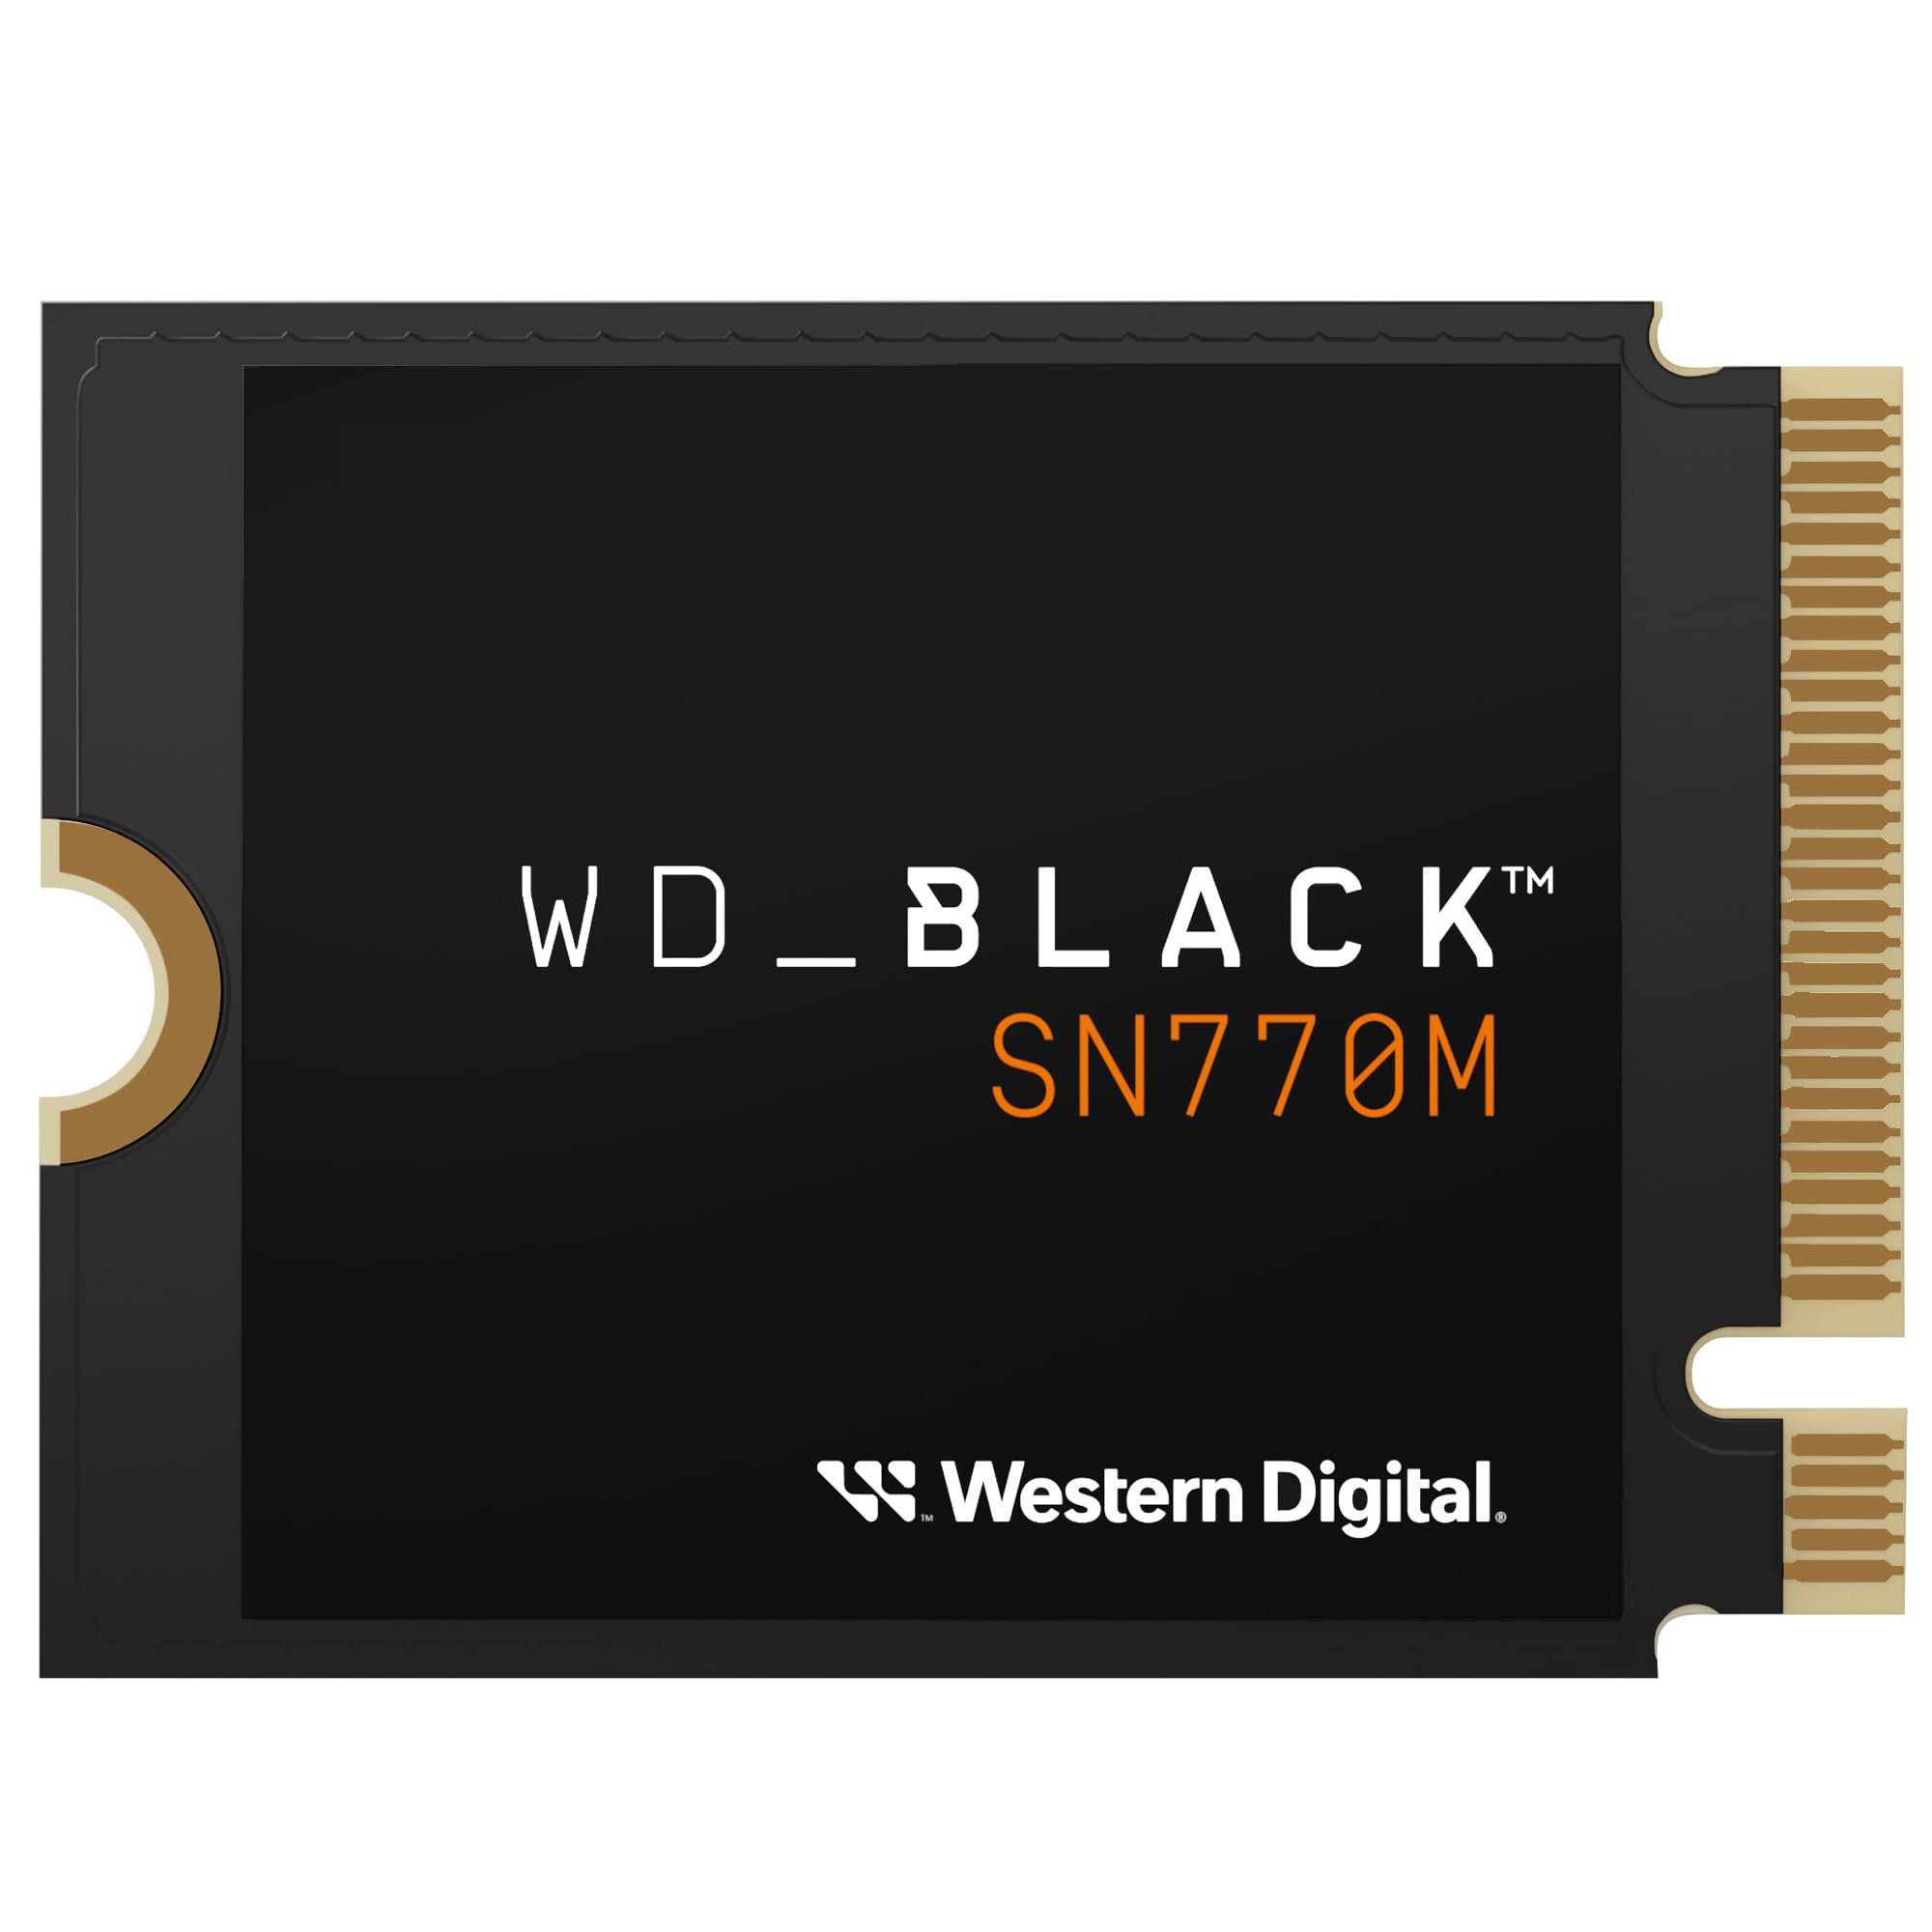 1TB WD_BLACK SN770M M.2 2230 NVMe SSD $84.14 + Free Shipping